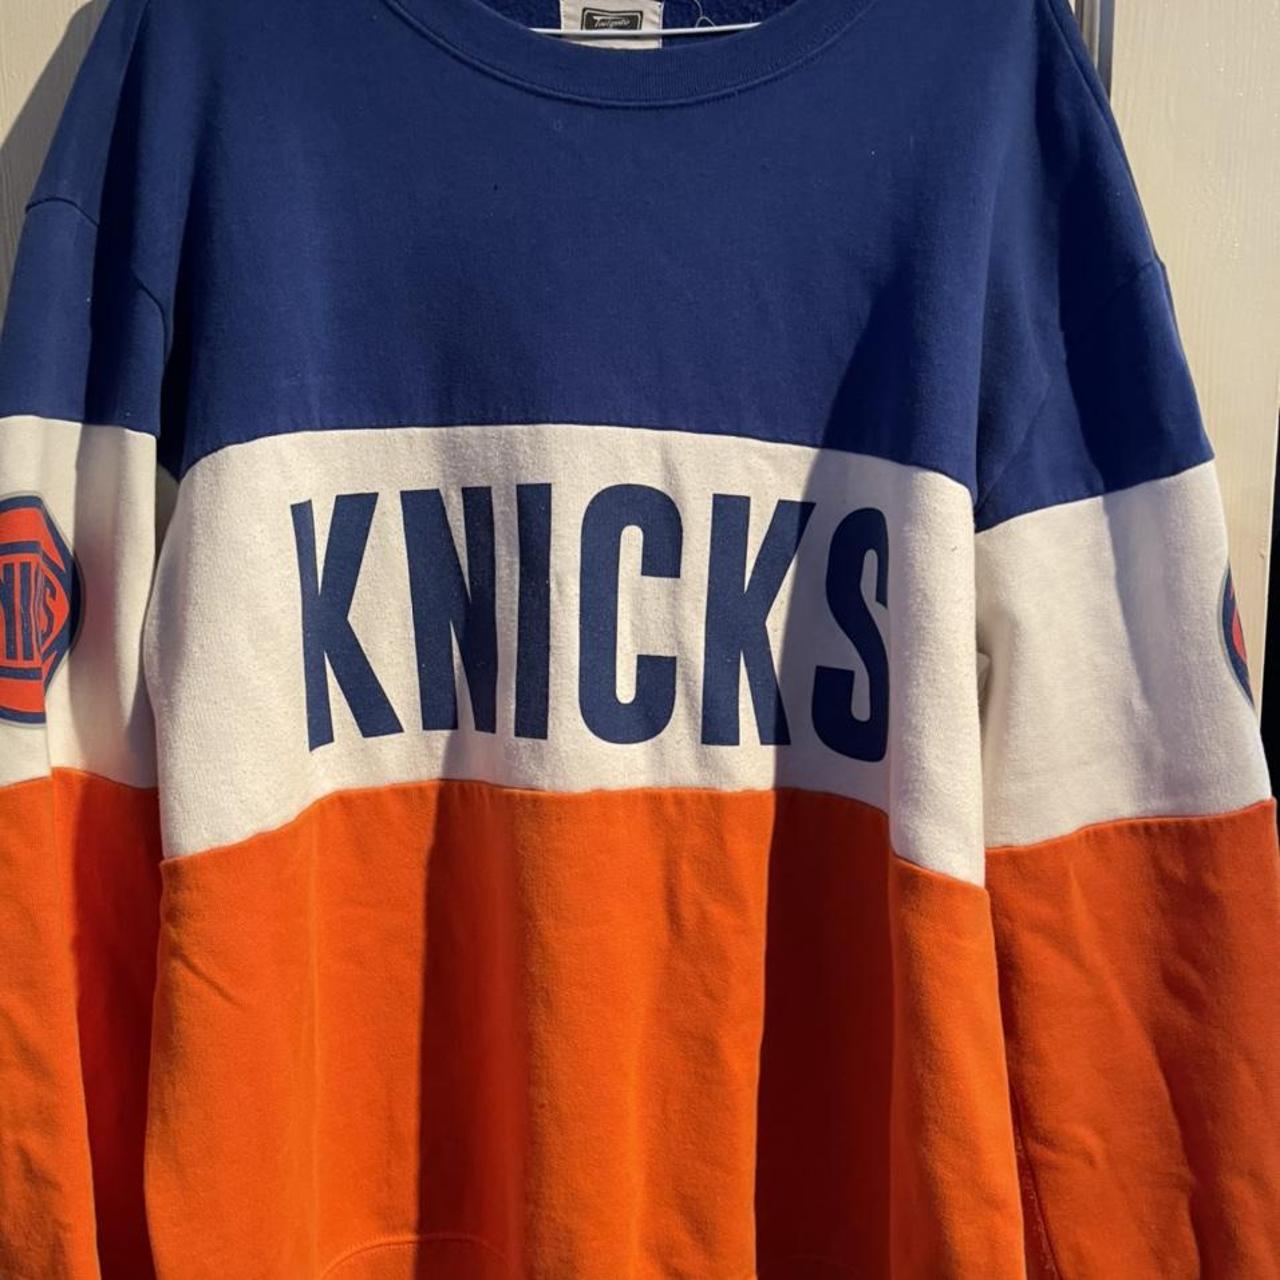 Vintage New York Knicks Sweater Mens Large Blue - Depop